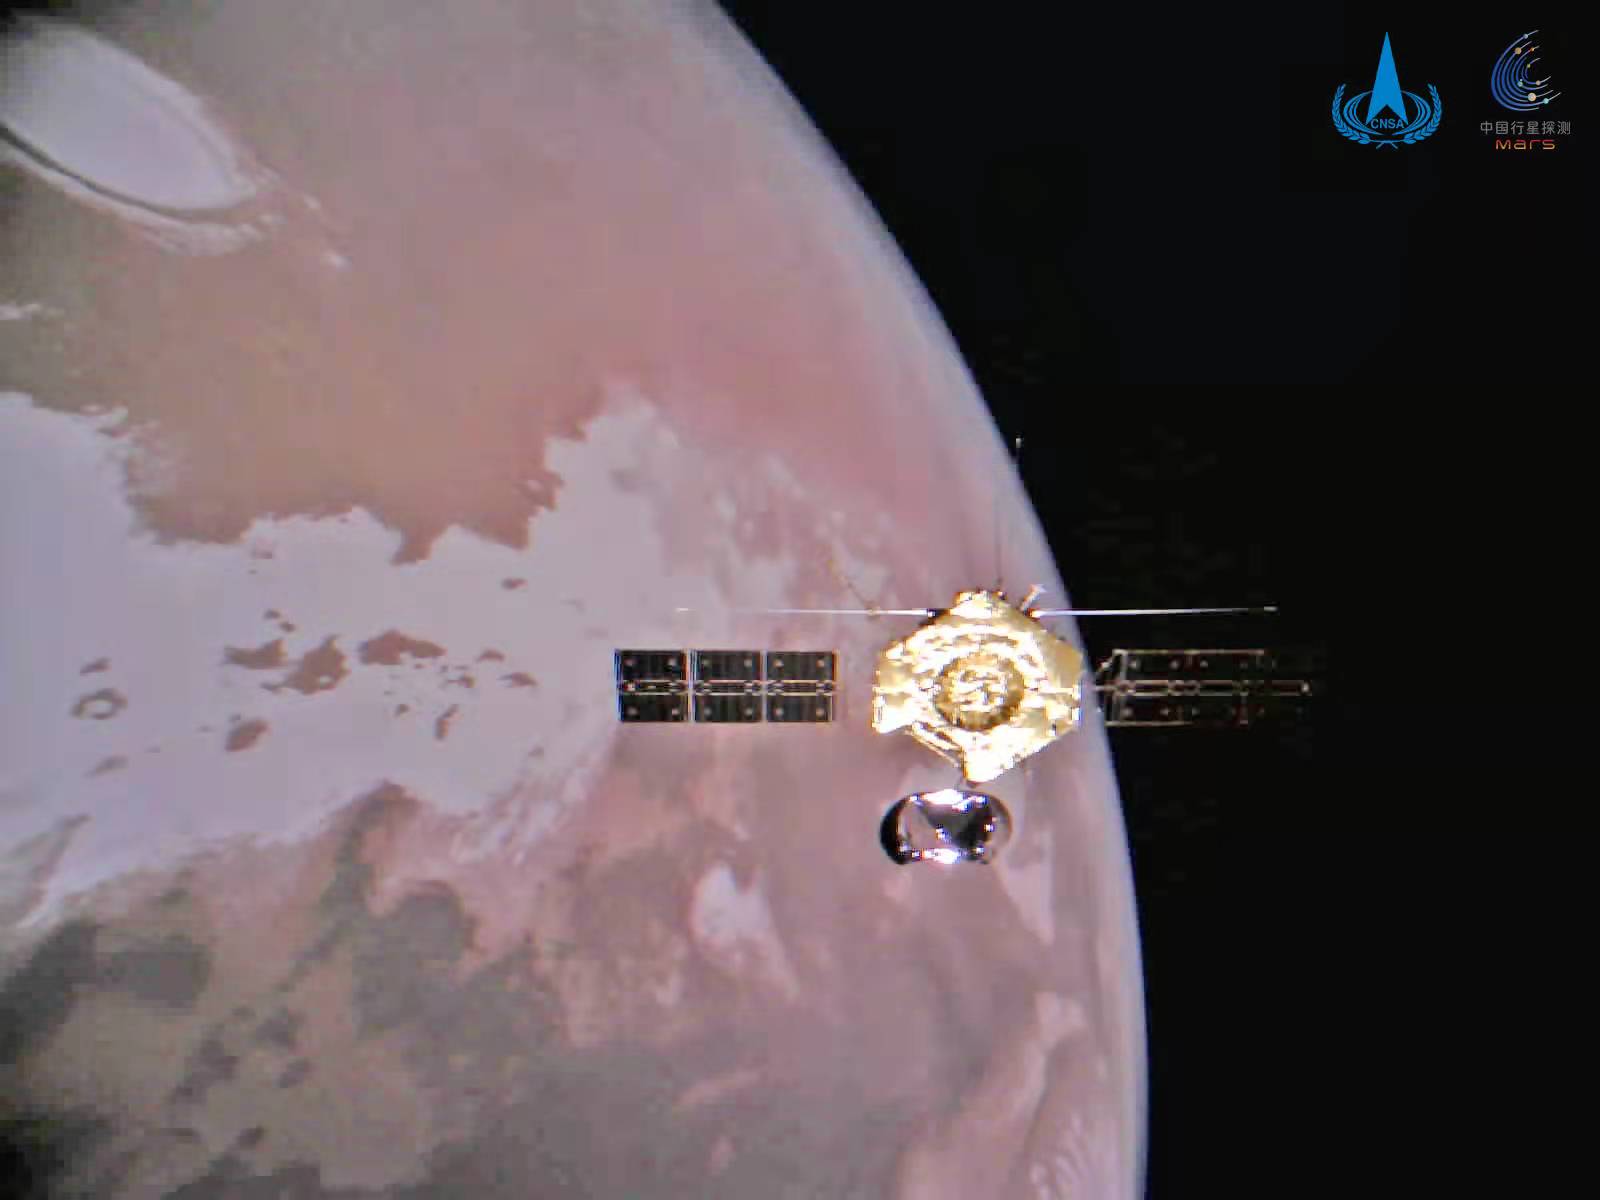 Tianwen 1: Mars orbit selfie